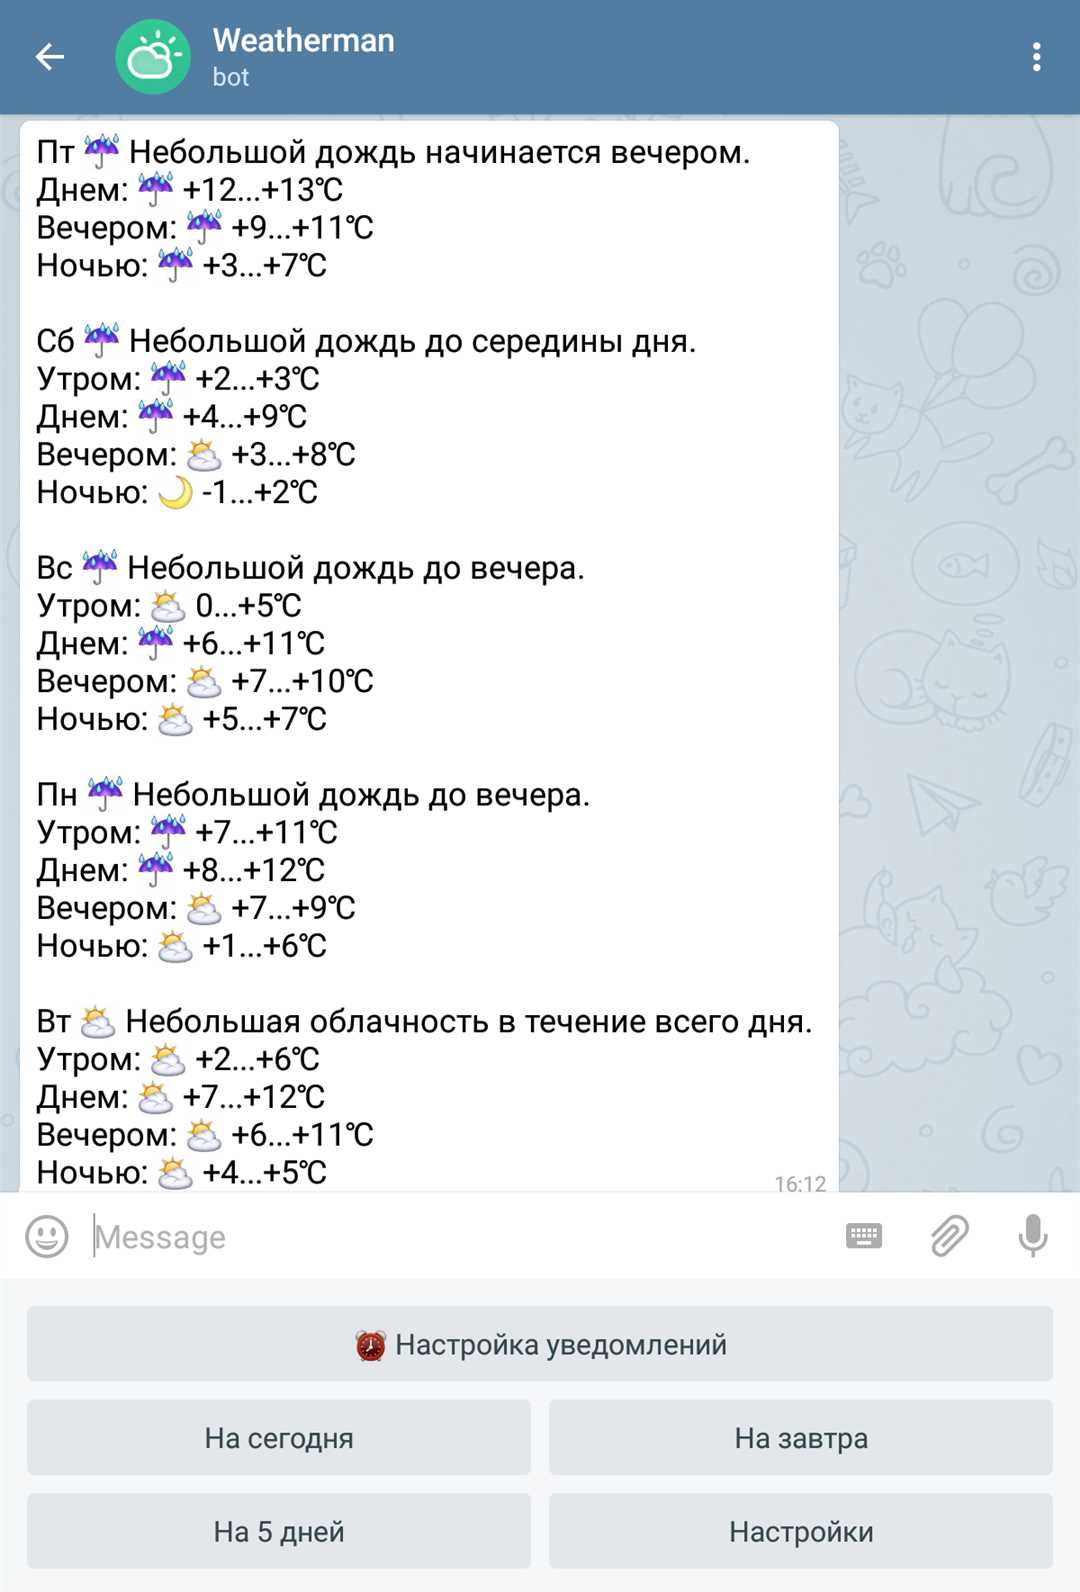 Сферы применения ботов в Telegram